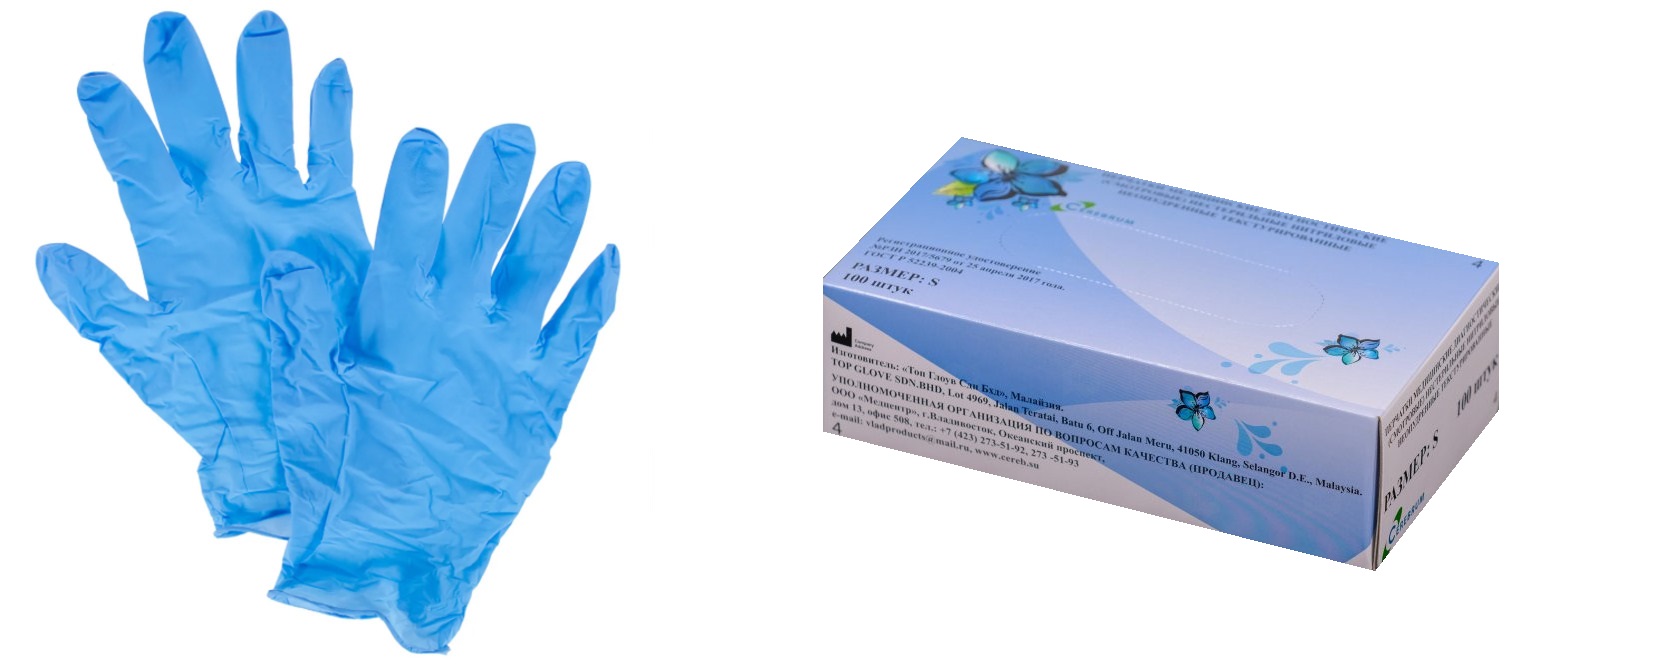 Перчатки медицинские диагностические (смотровые) нестерильные нитриловые неопудренные текстурированные. Размер S. Голубого цвета.